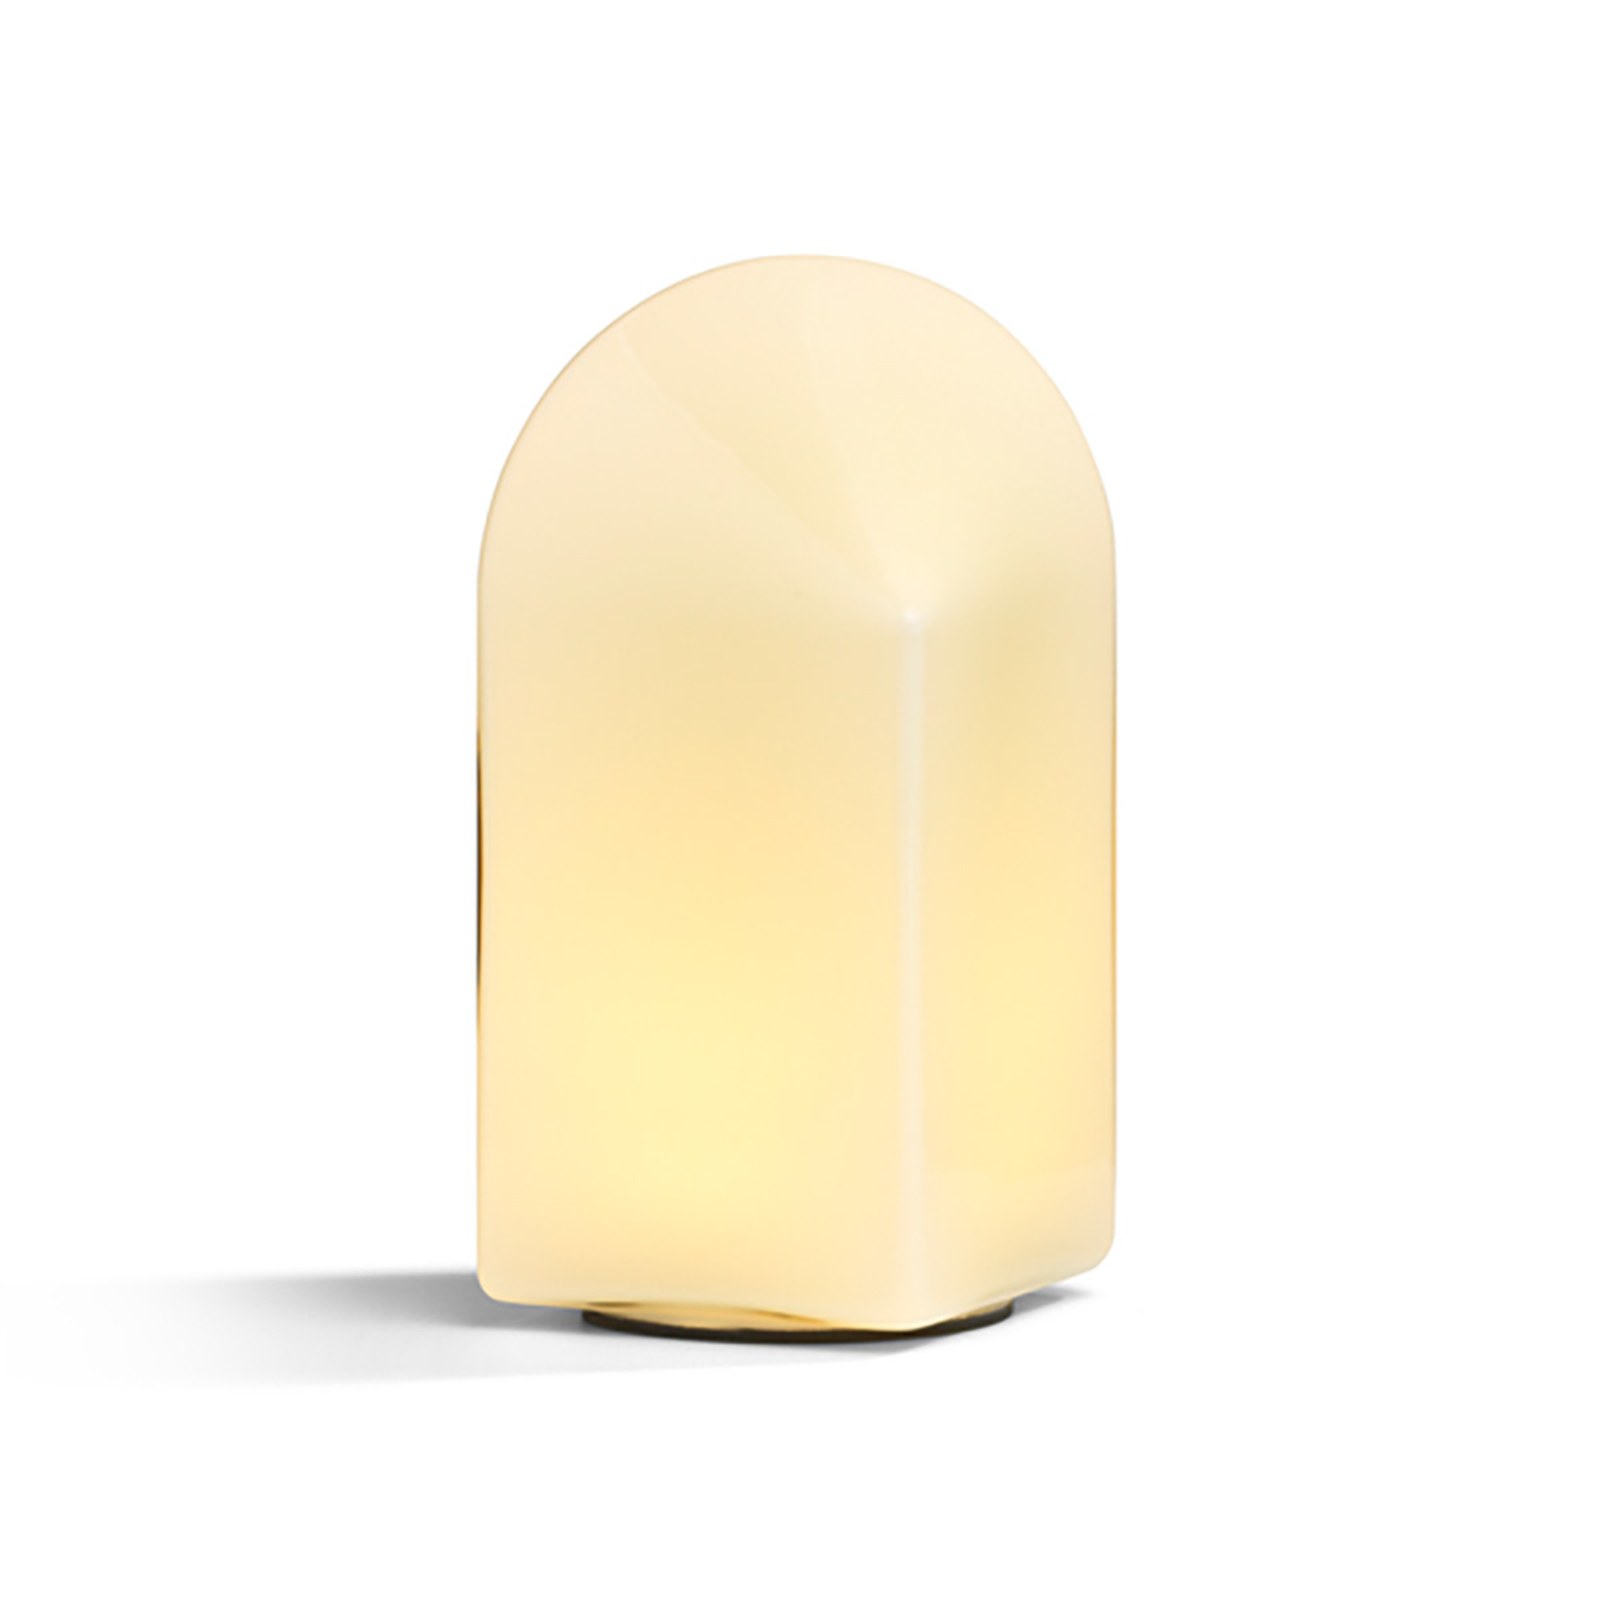 HAY Parade Lampă de masă cu LED cu coajă albă înălțime 24 cm